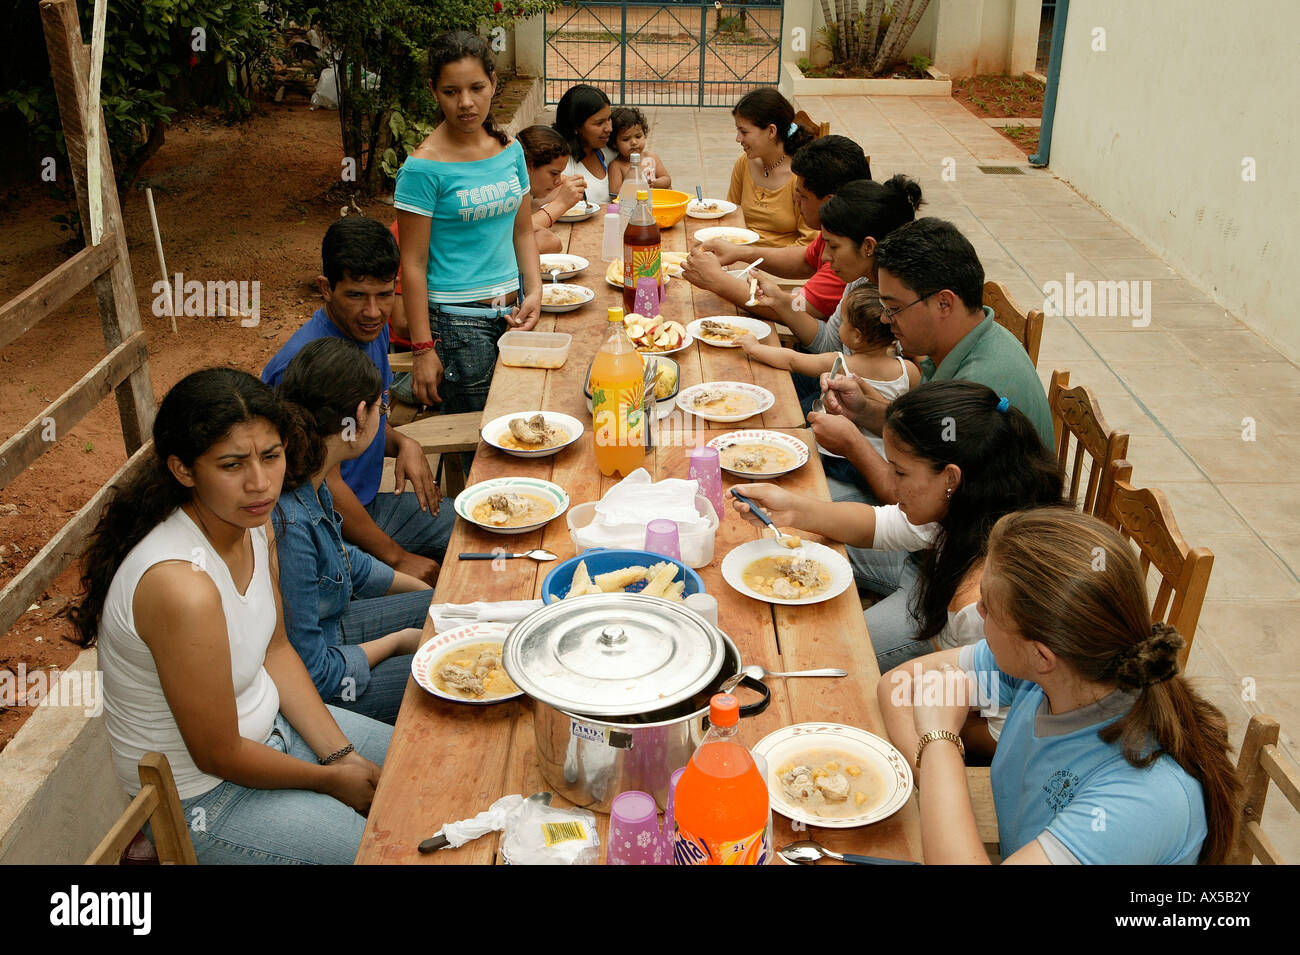 Manger ensemble groupe sur une terrasse, Asunción, Paraguay, Amérique du Sud Banque D'Images